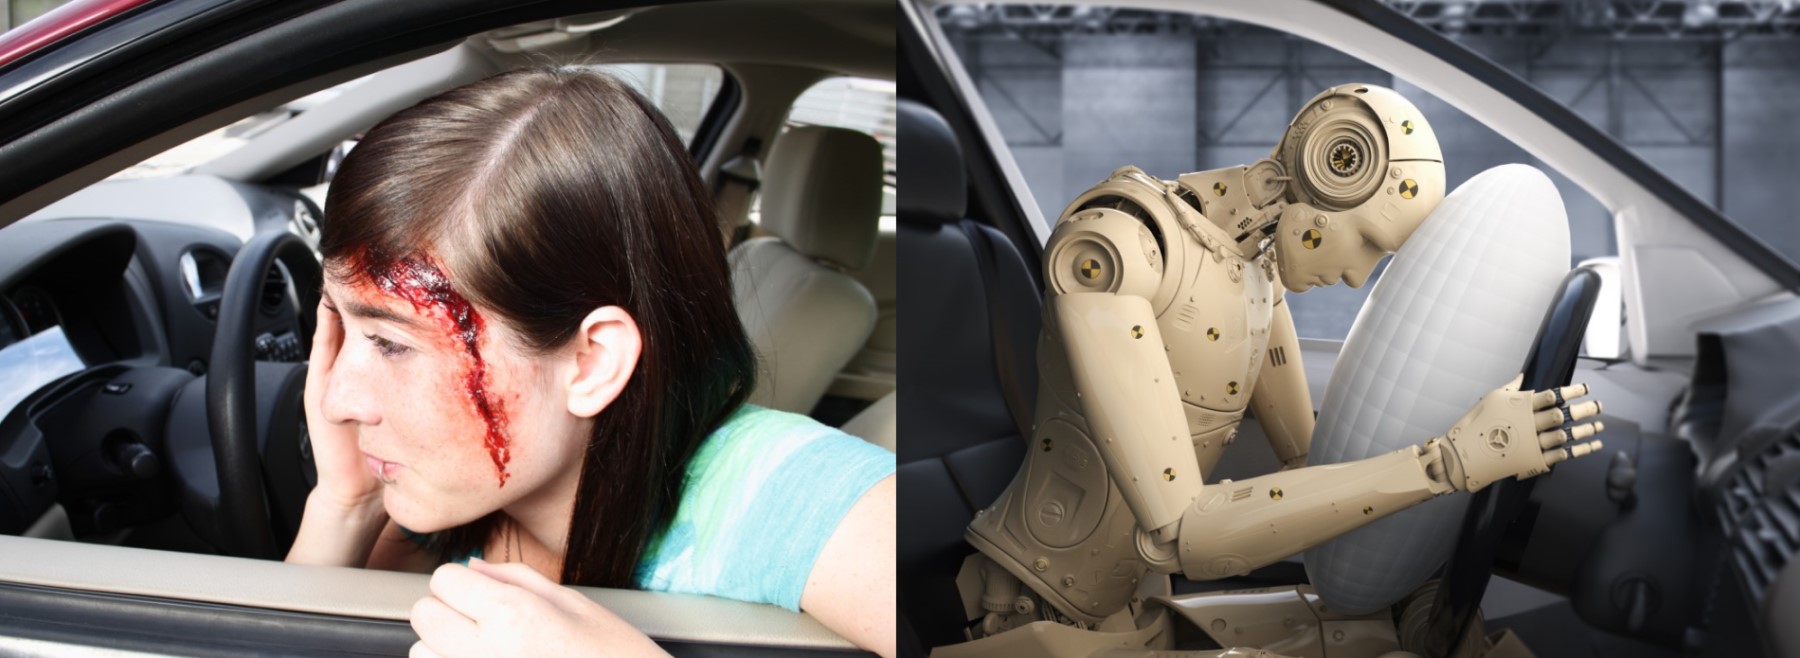 Úraz hlavy je častým následkom dopravnej nehody - žena v aute, po dopravnej nehode - úraz hlavy a krvácanie + druhý obrázok s testom auta - testovacia figurína naráža hlavou do volantu s airbagom 